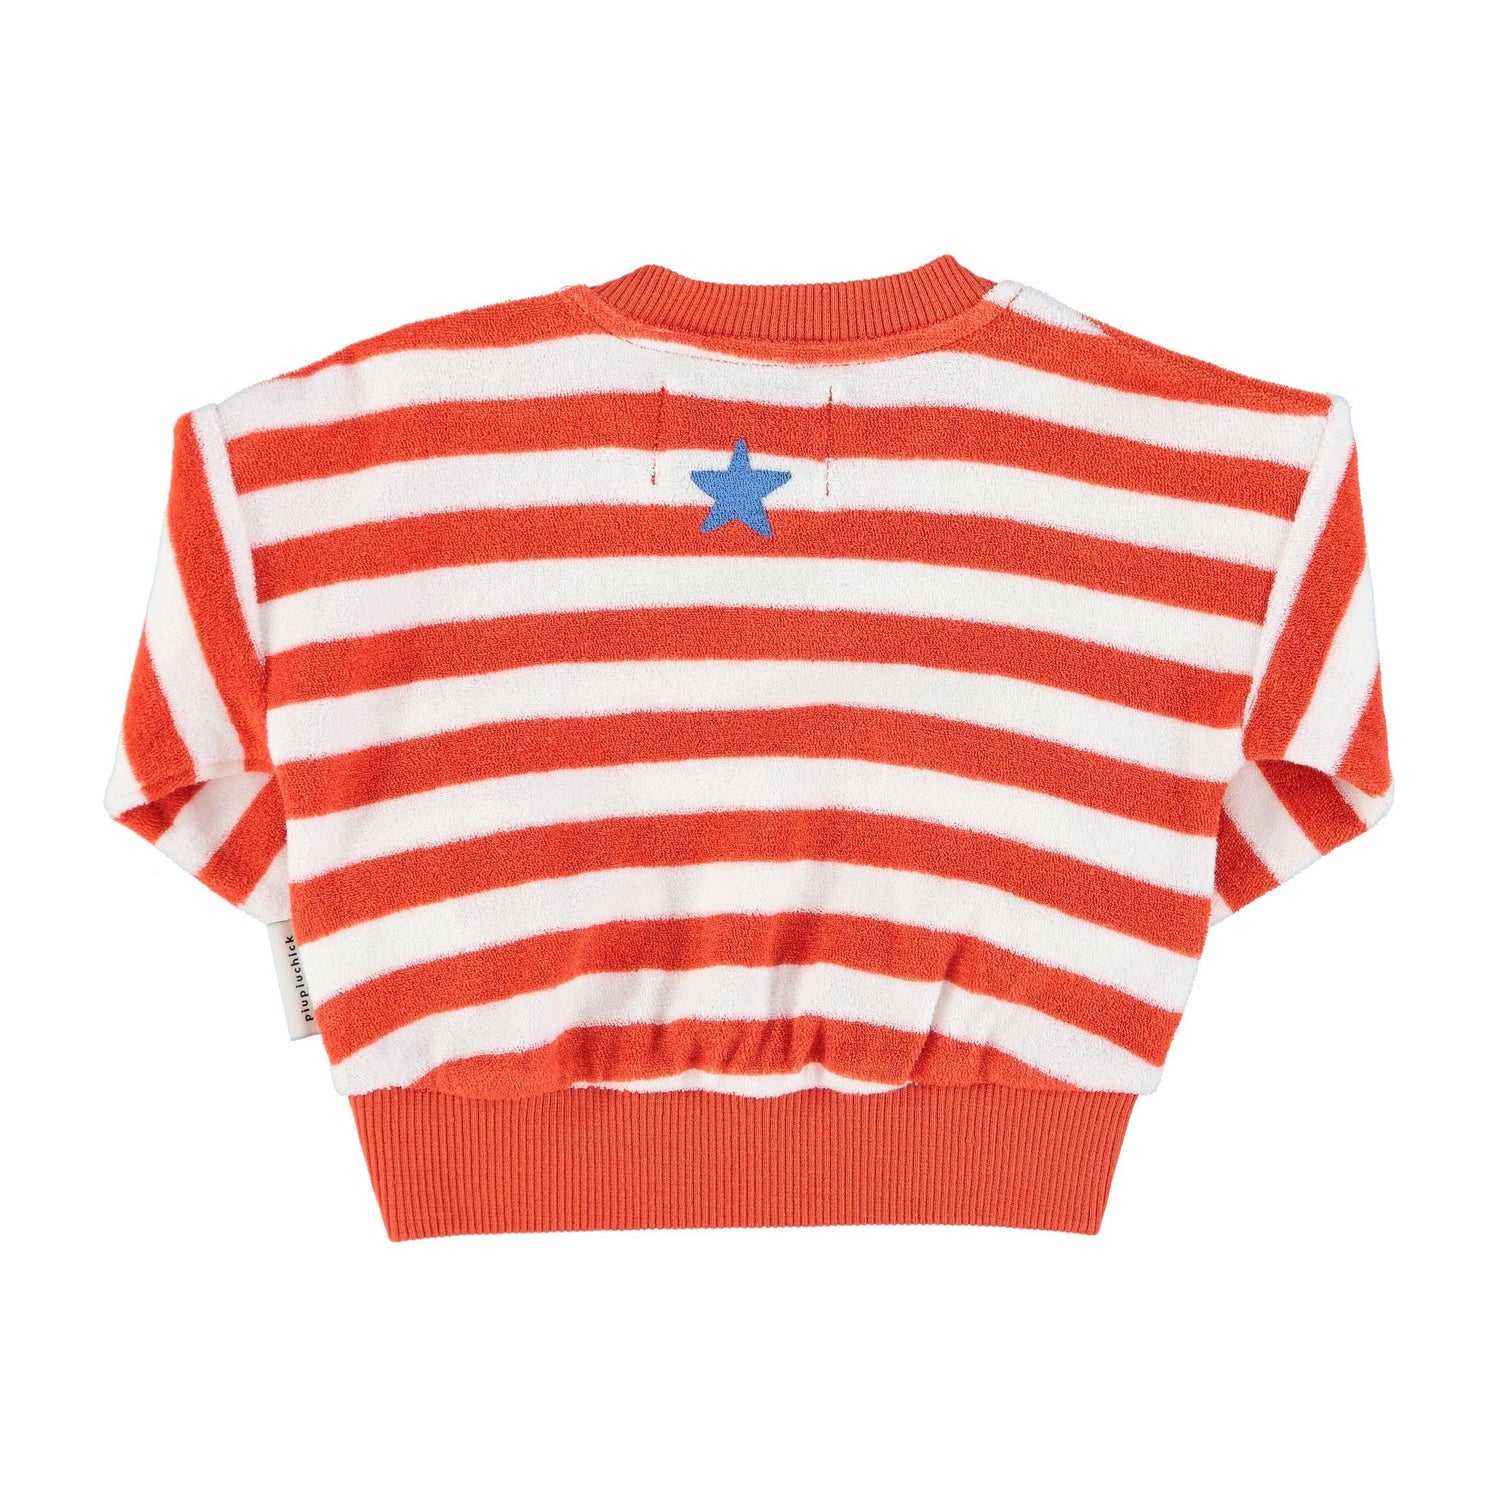 Piupiuchick - Baby - Kinder Frottee Sweatshirt Streifen rot weiß